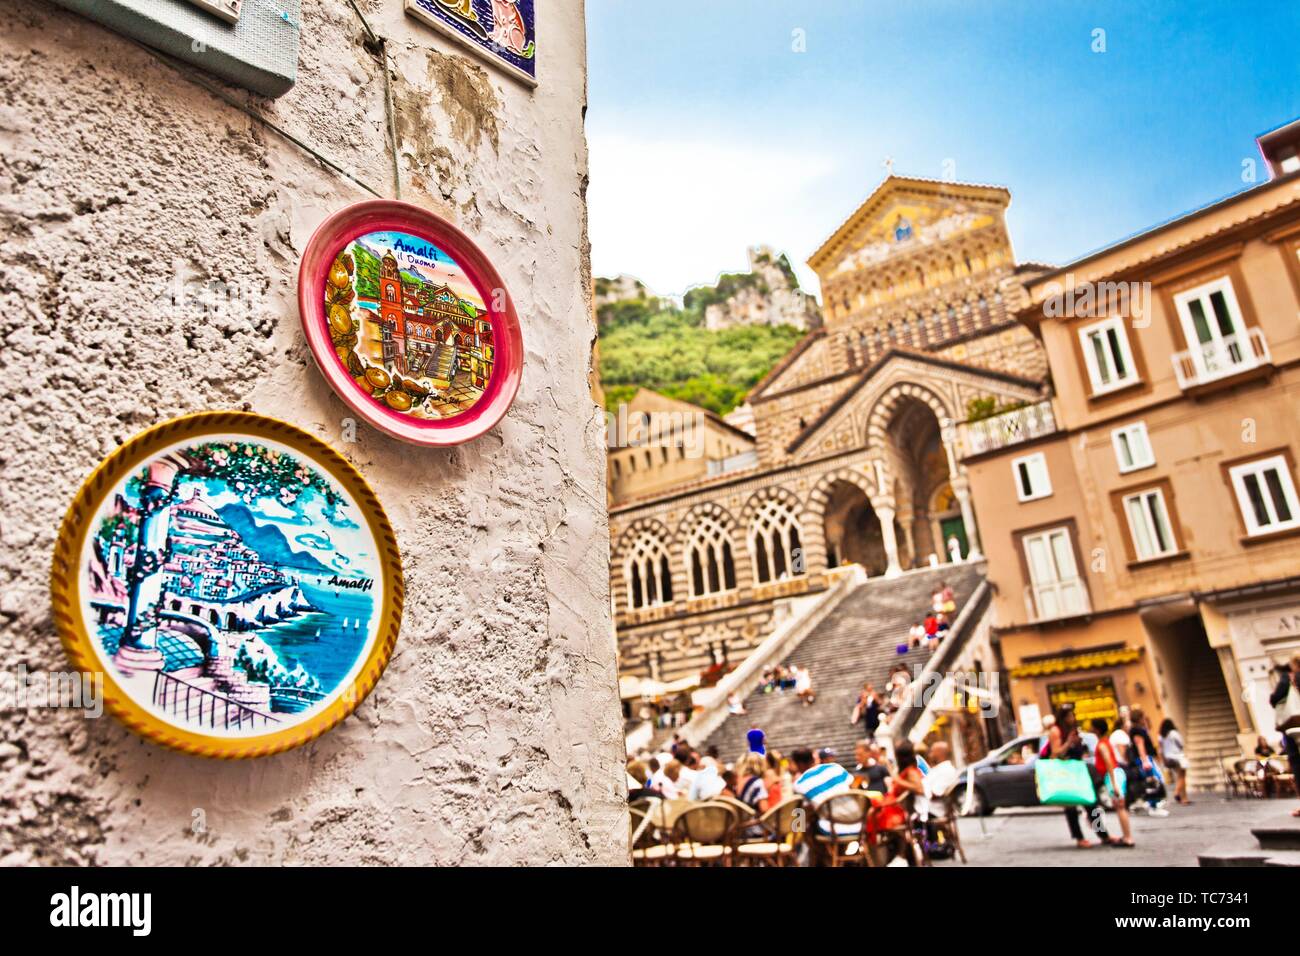 La catedral de Amalfi, Duomo di Amalfi, la Plaza de la Catedral, la Piazza del Duomo, Amalfi, provincia de Salerno, en la costa de Amalfi, el Golfo de Salerno, Campania, Foto de stock